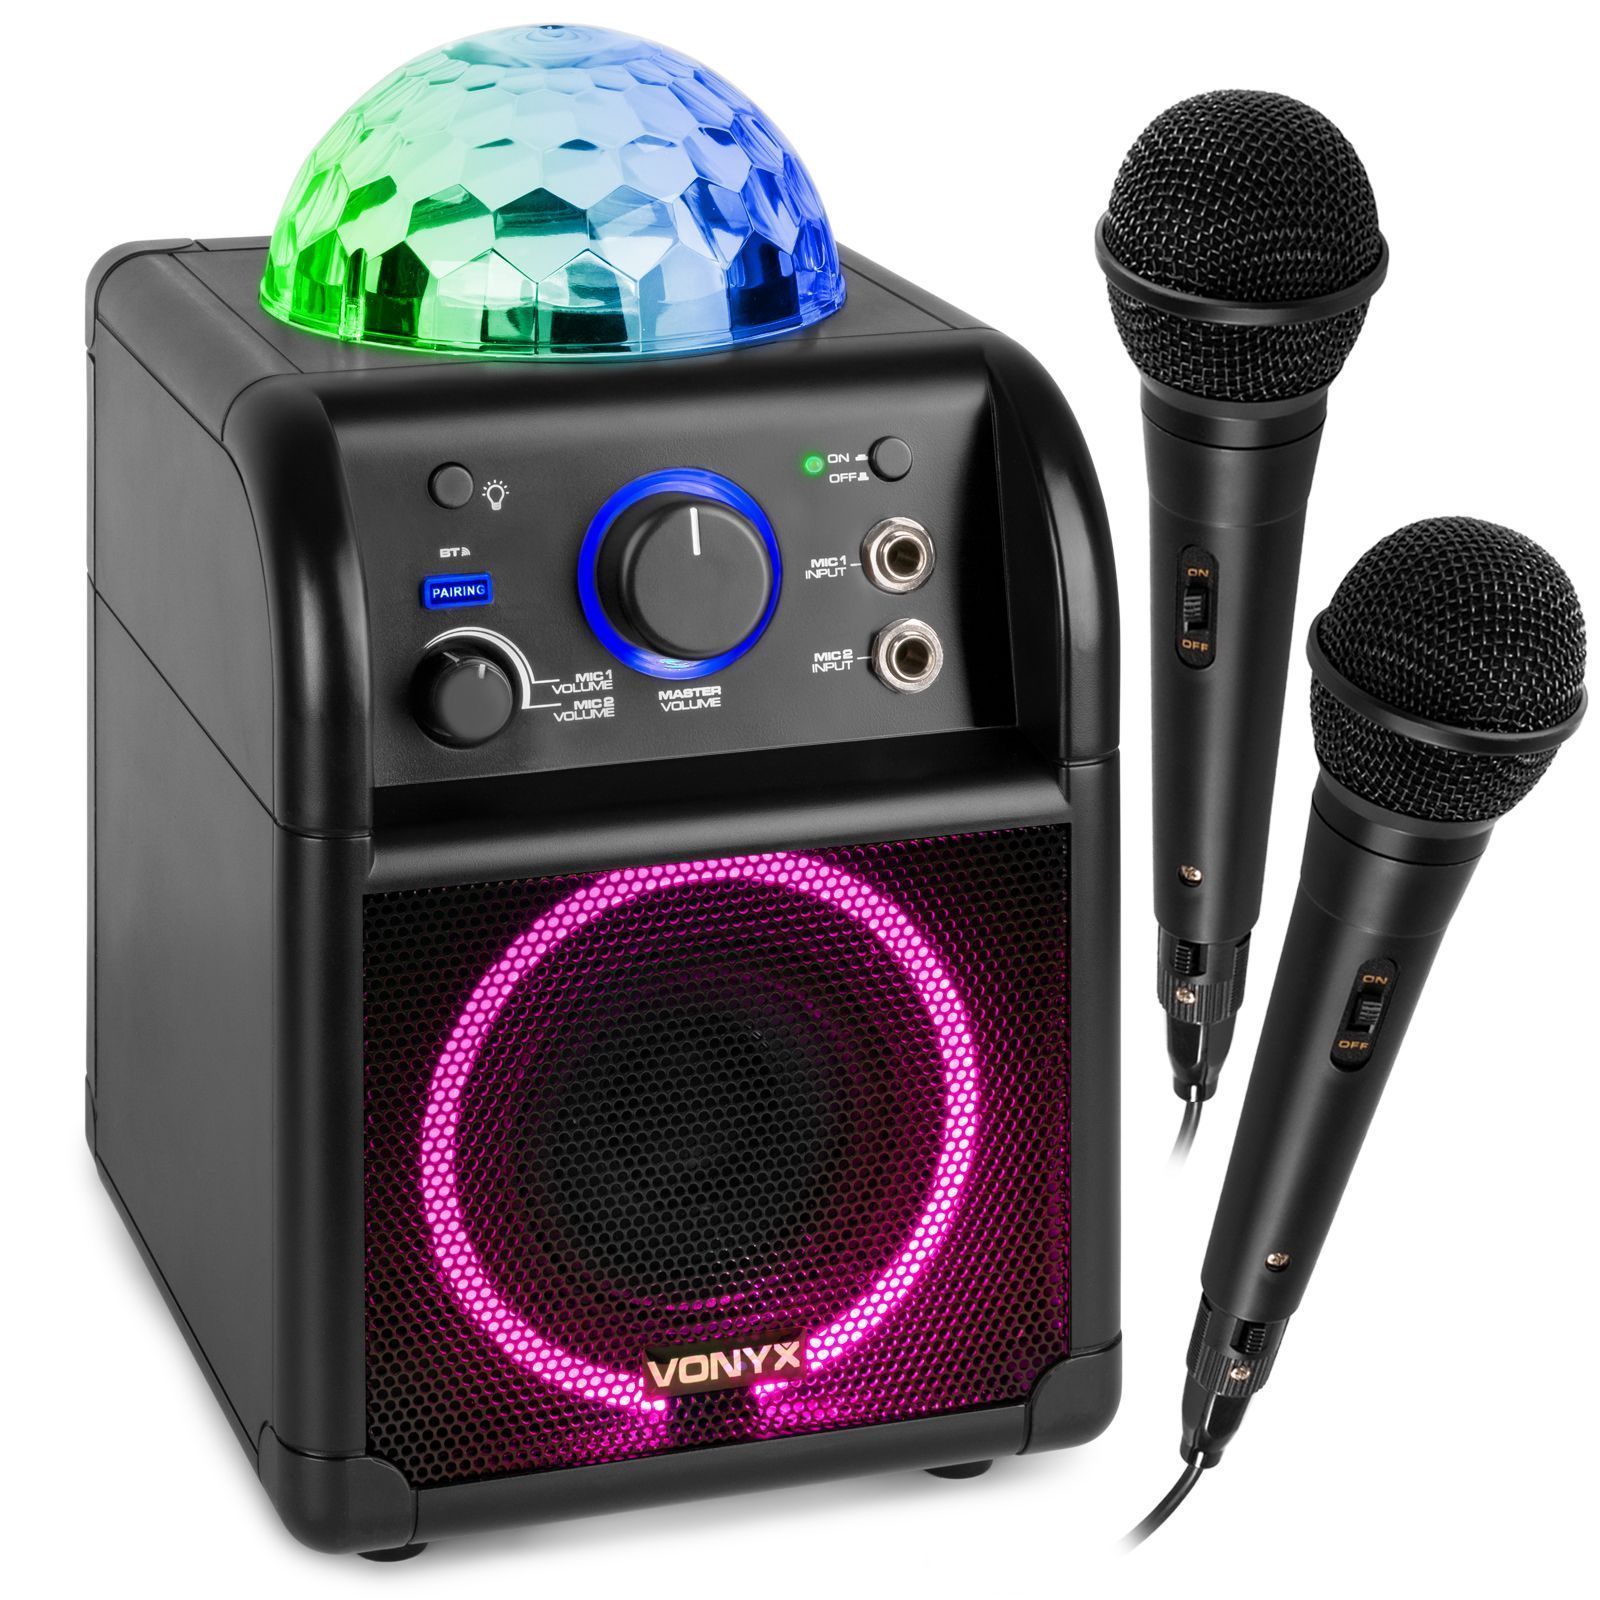 Vonyx SBS55B BT karaokemaskin led ljuseffekt inbyggd - Svart färg